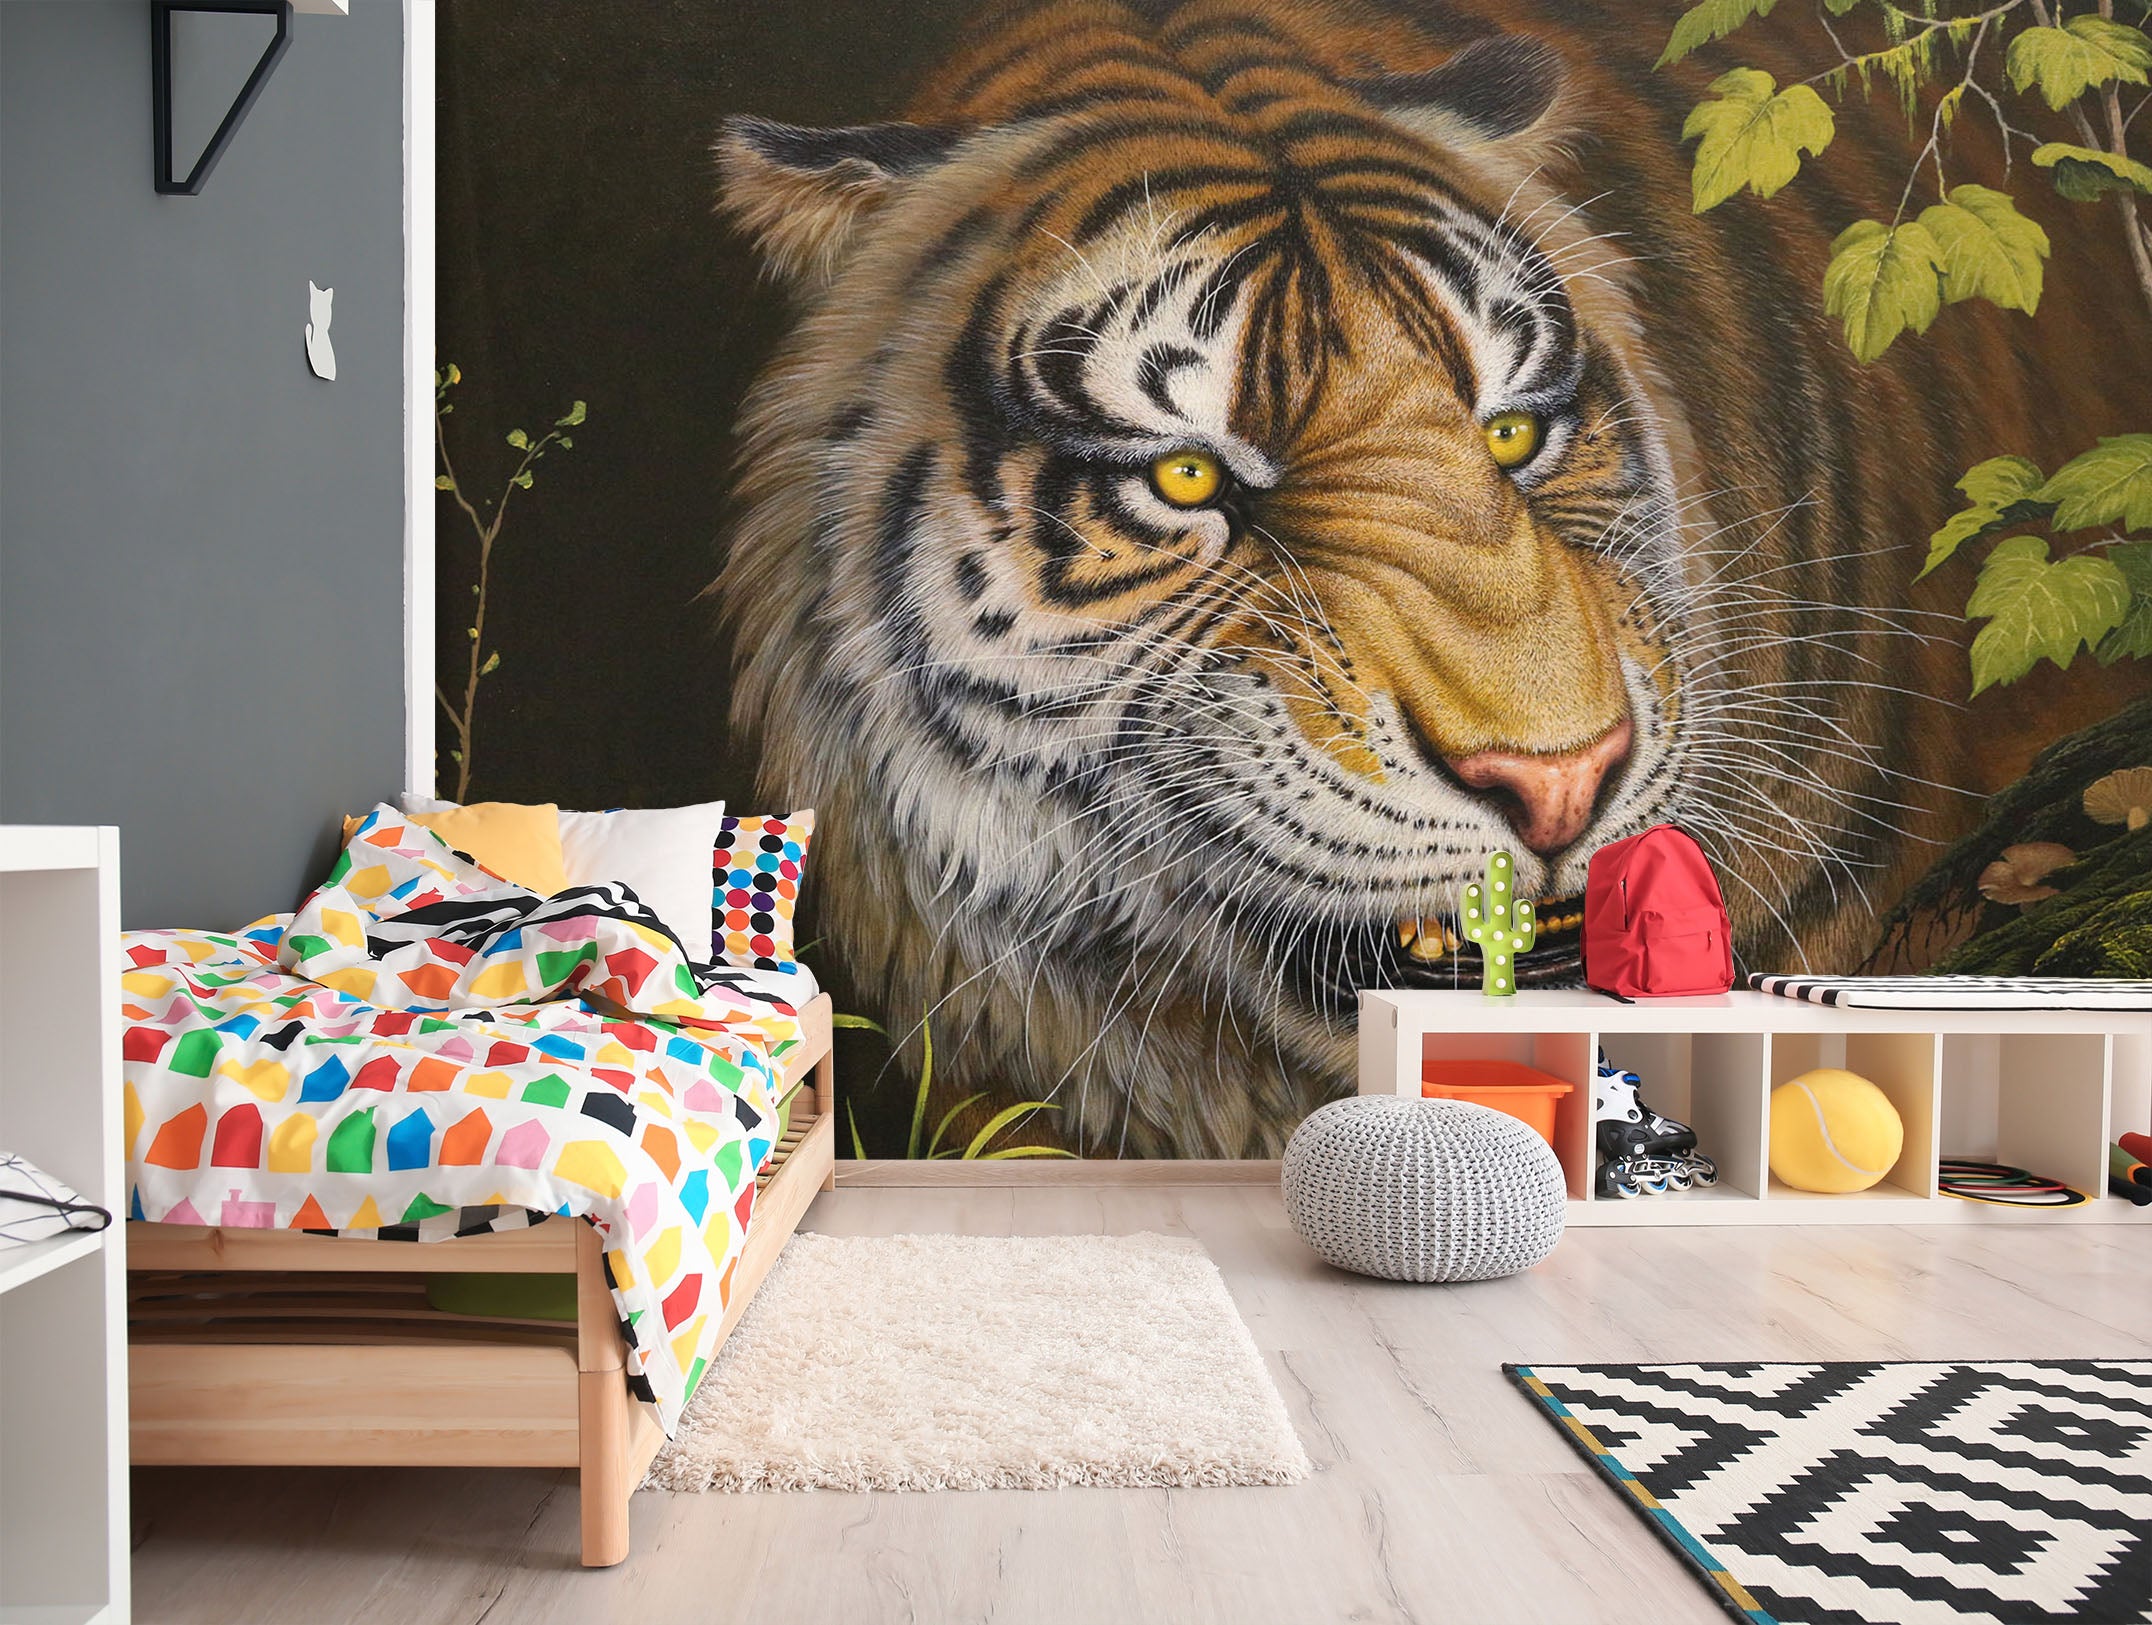 3D Tiger Leaf 233 Wall Murals